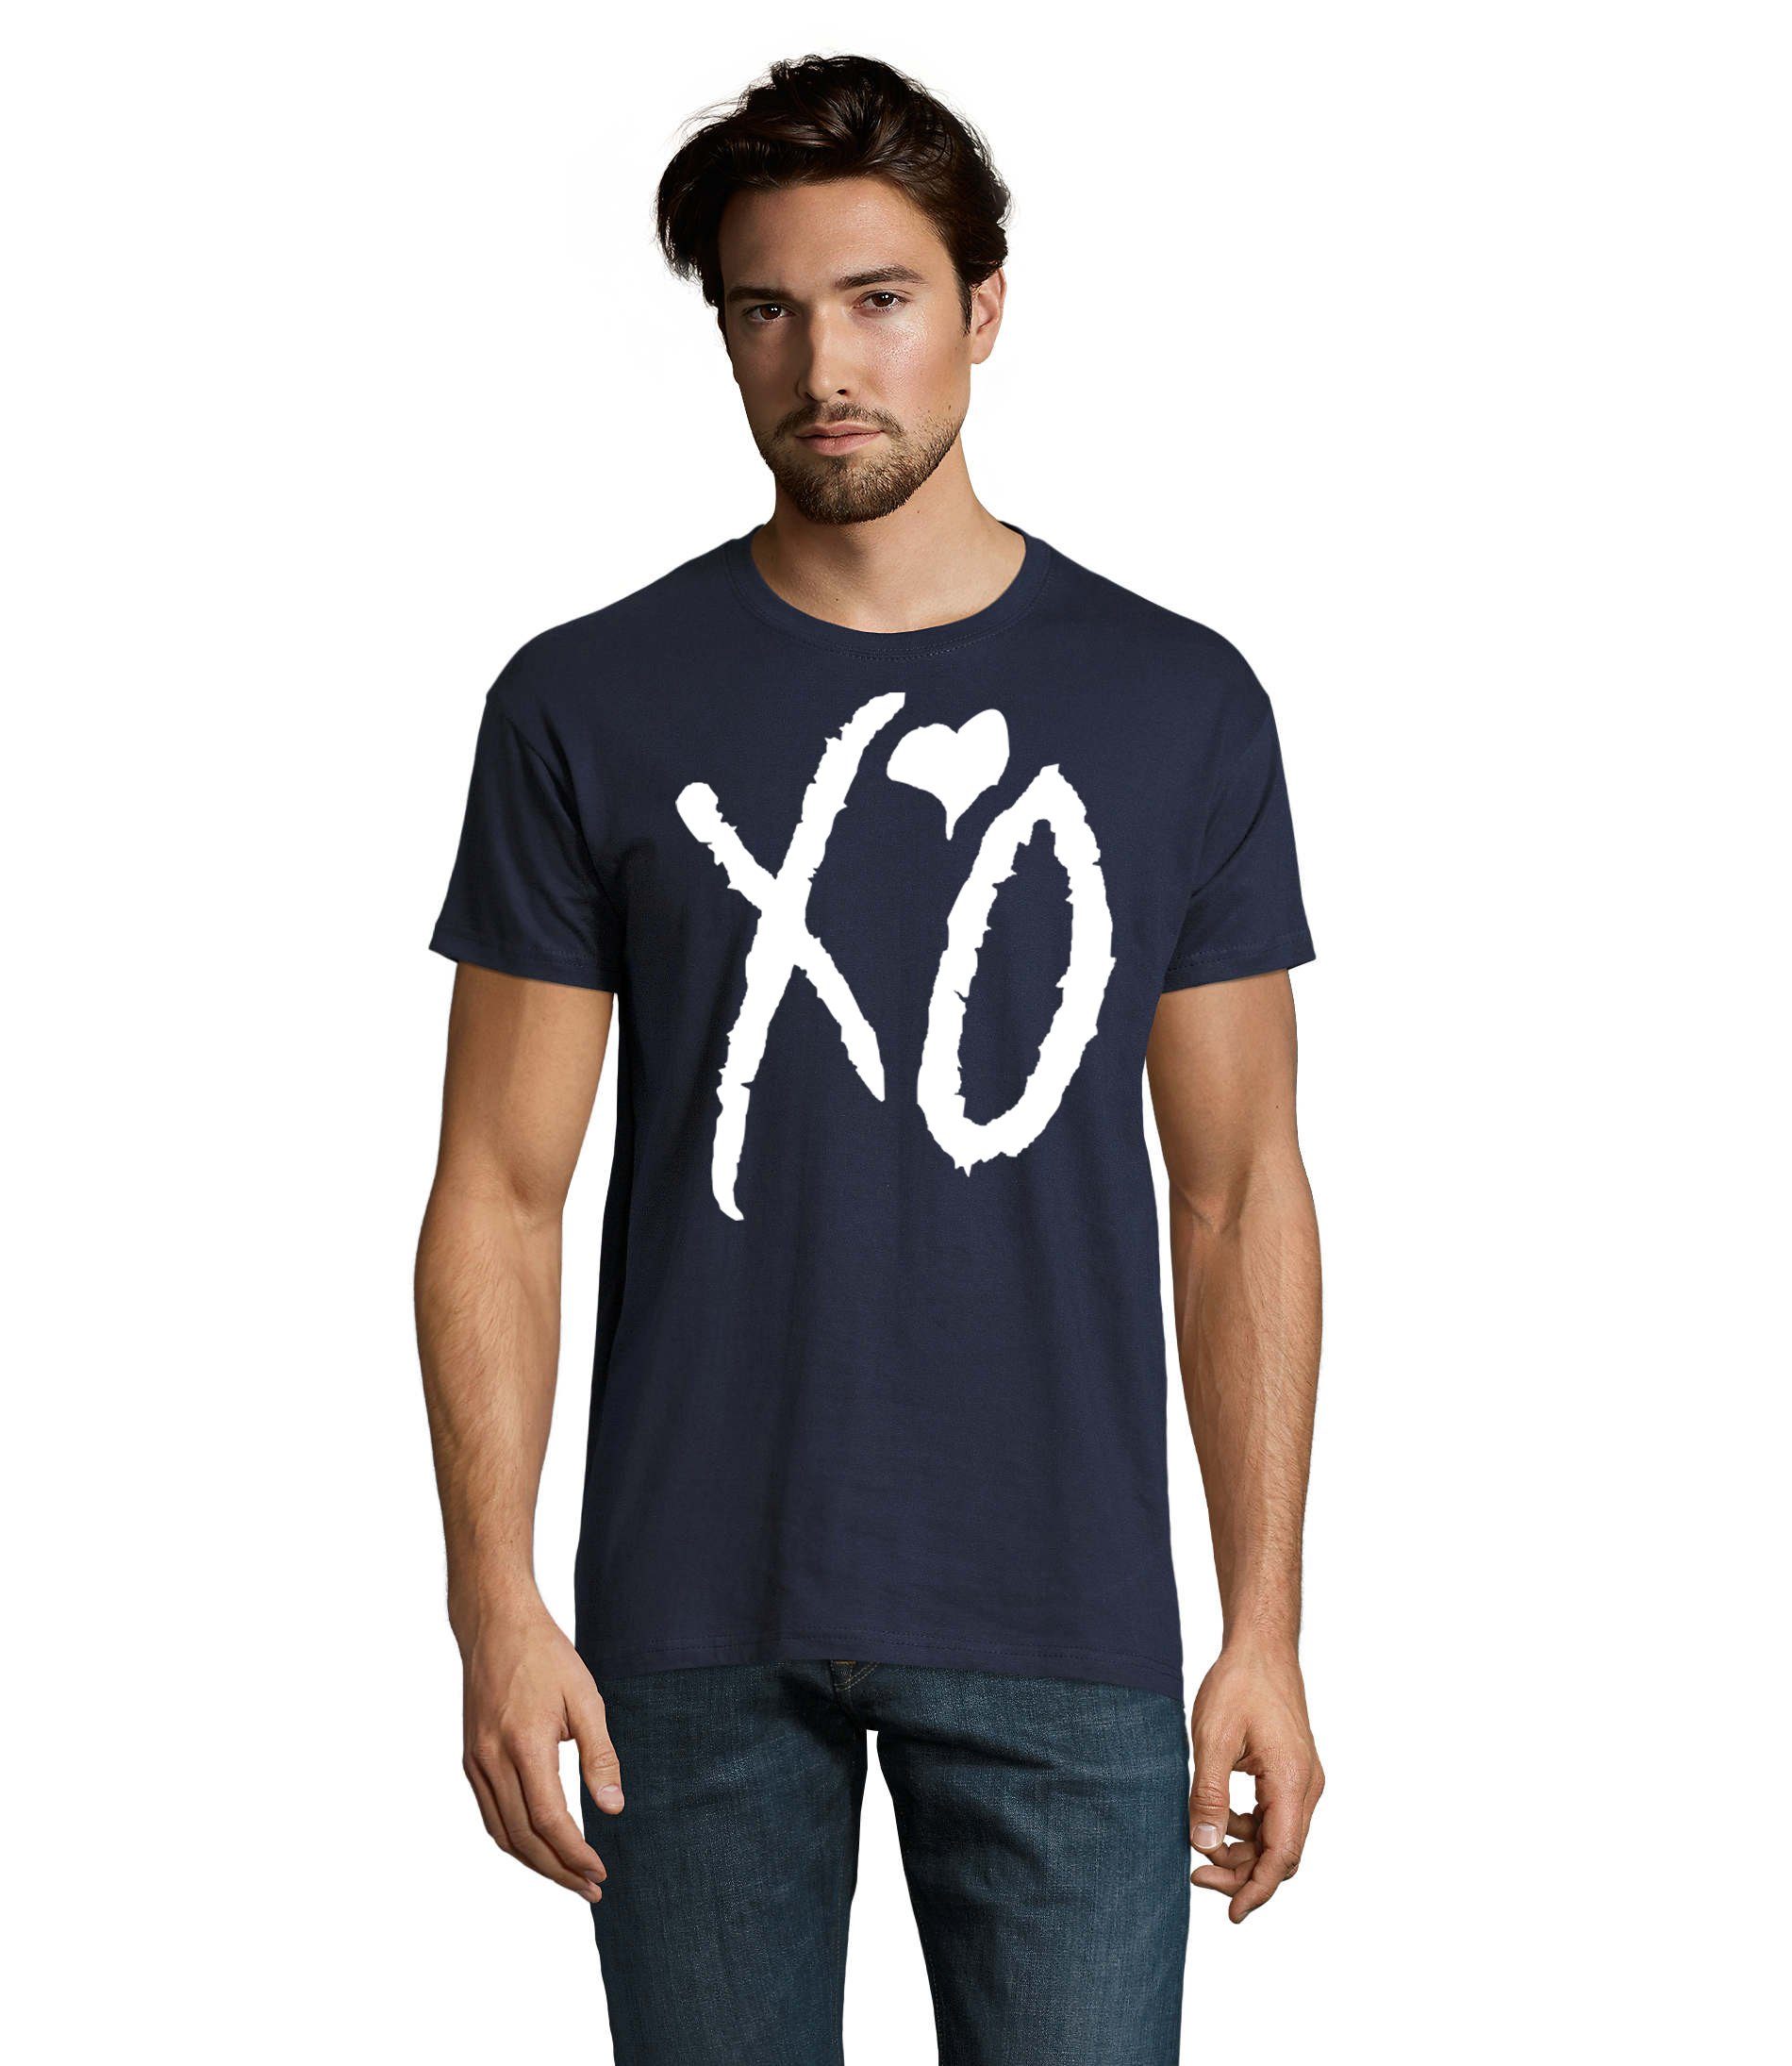 Blondie & Brownie T-Shirt Herren XO Kisses Hugs Weeknd Starboy Musik Fan Festival Navyblau